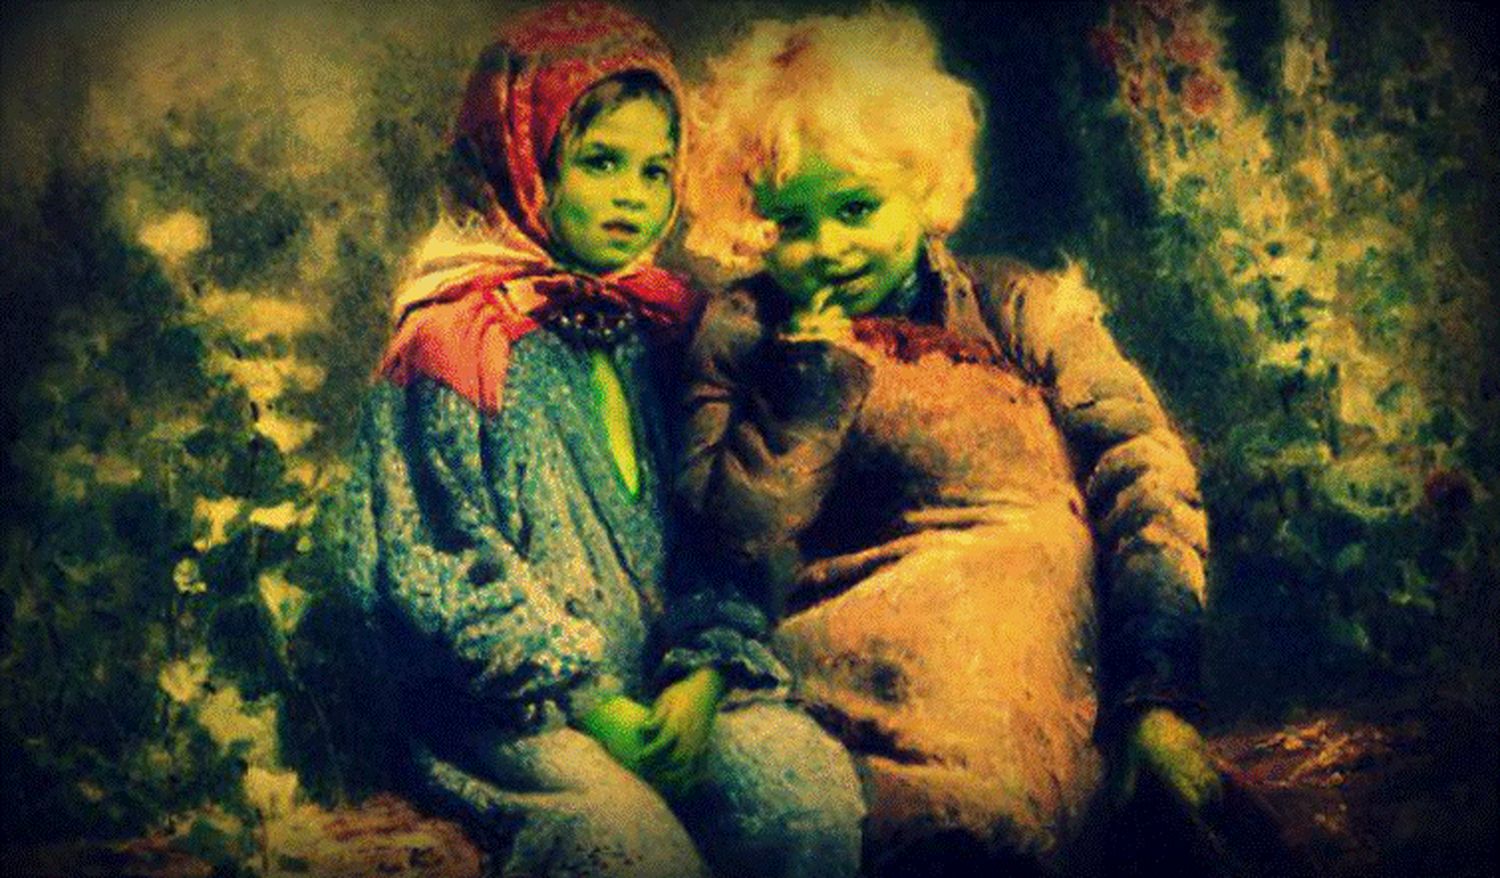 Povestea incredibilă a copiilor cu pielea verde ca frunzele. A fost consemnată oficial de doi cronicari medievali